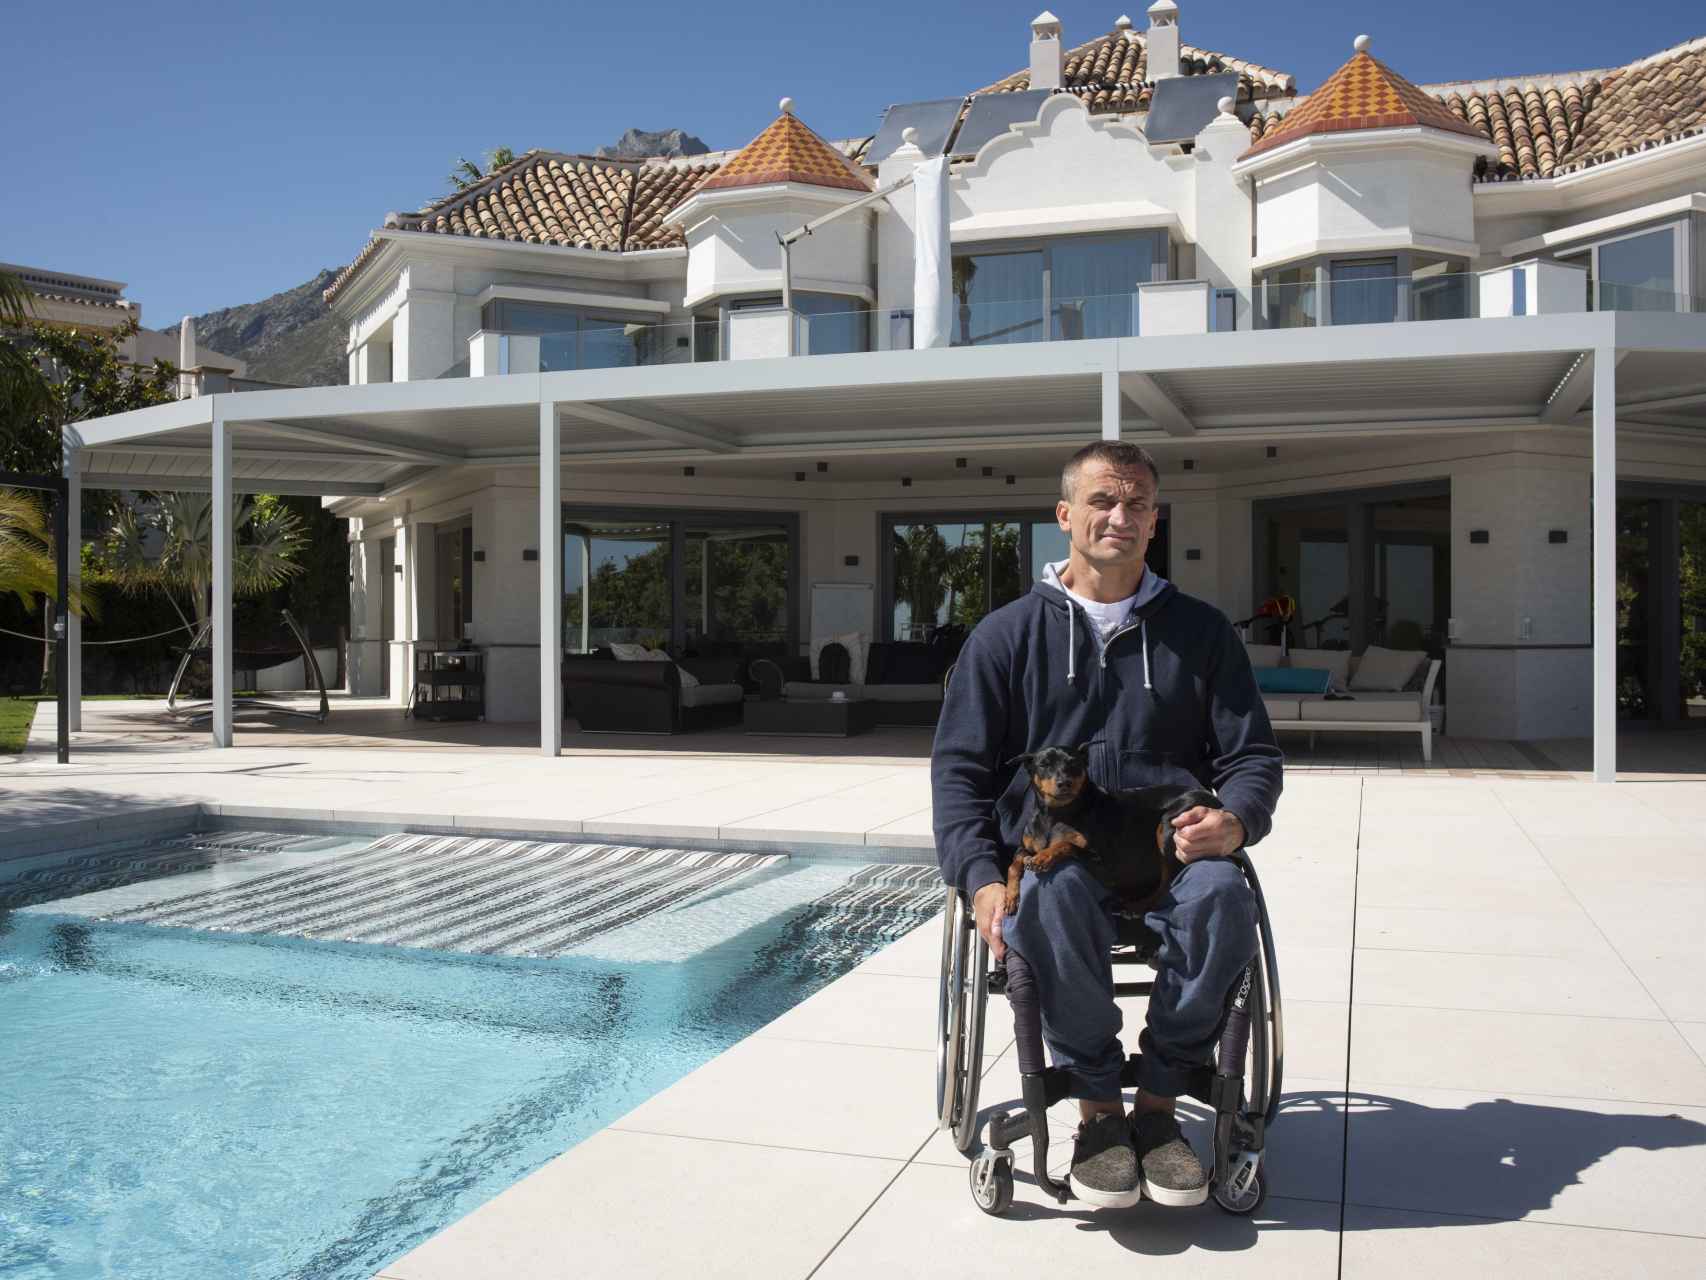 El acusado acude cada día a una clínica de rehabilitación en Marbella. Hace 22 años quedó parapléjico tras sufrir un accidente.